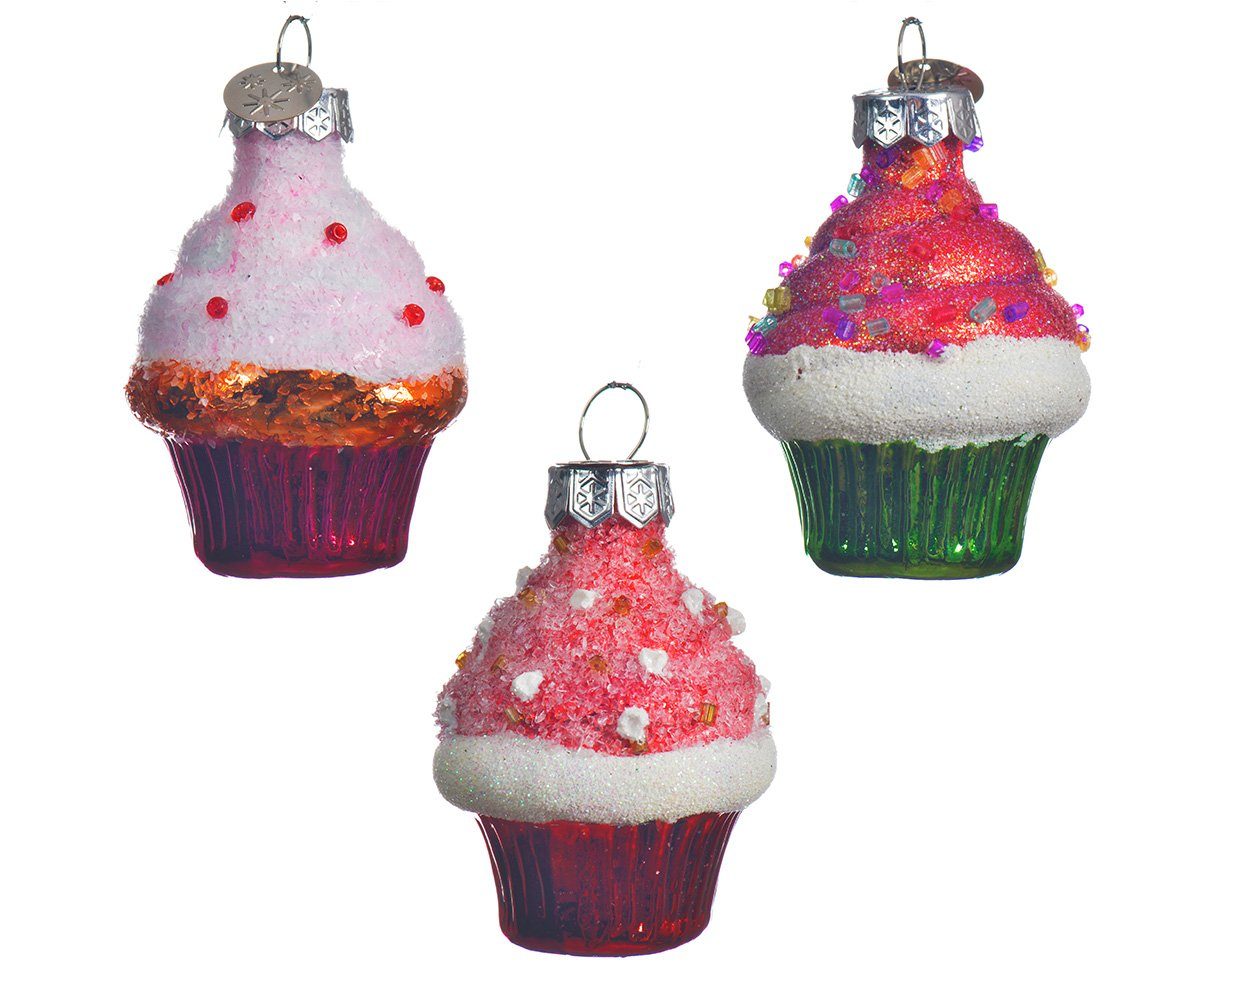 Decoris season decorations Christbaumschmuck, Christbaumschmuck Glas Mini Cupcakes 6cm rosa / pink 1 Stück sortiert